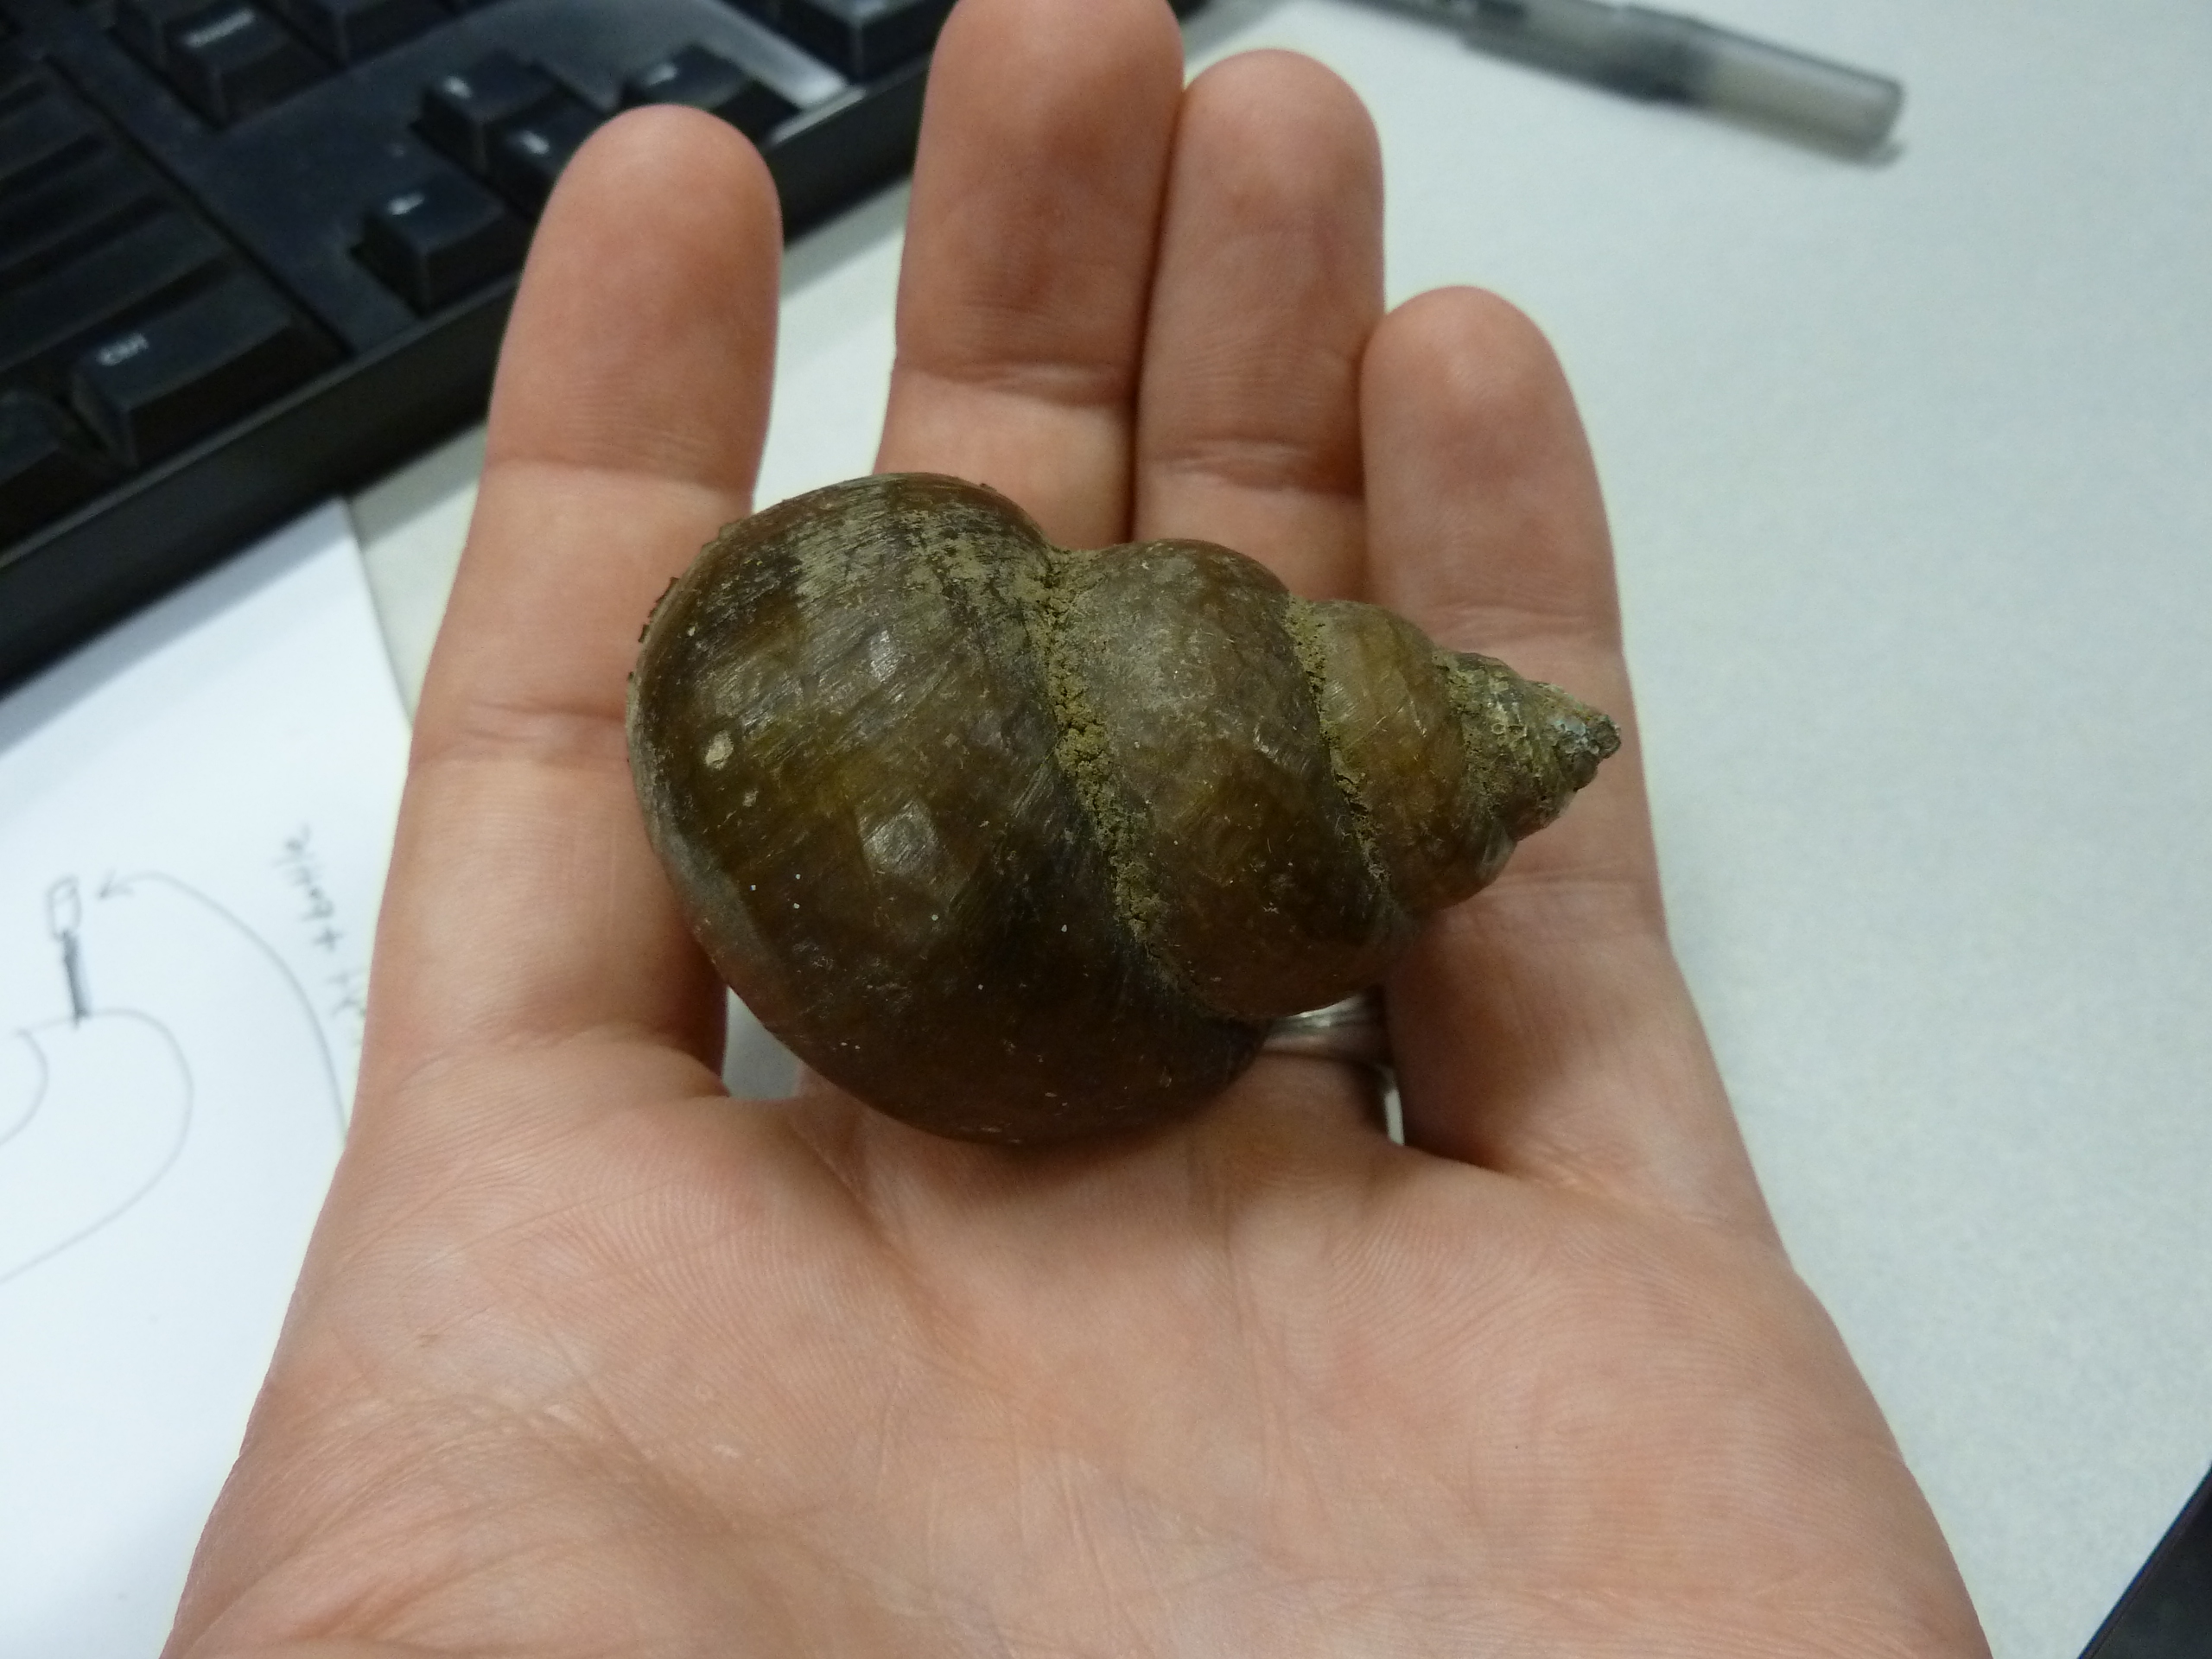 mystery snail bottom